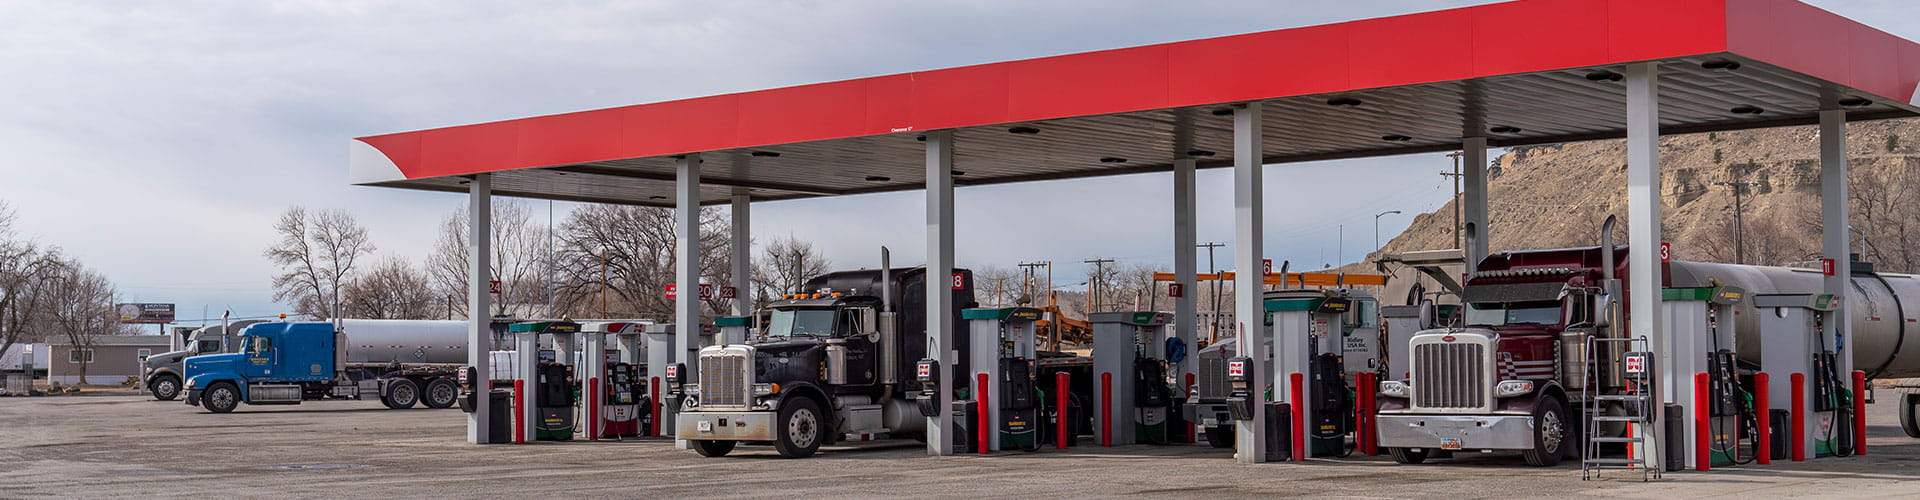 Semi trucks filling up at Cenex diesel gas pumps